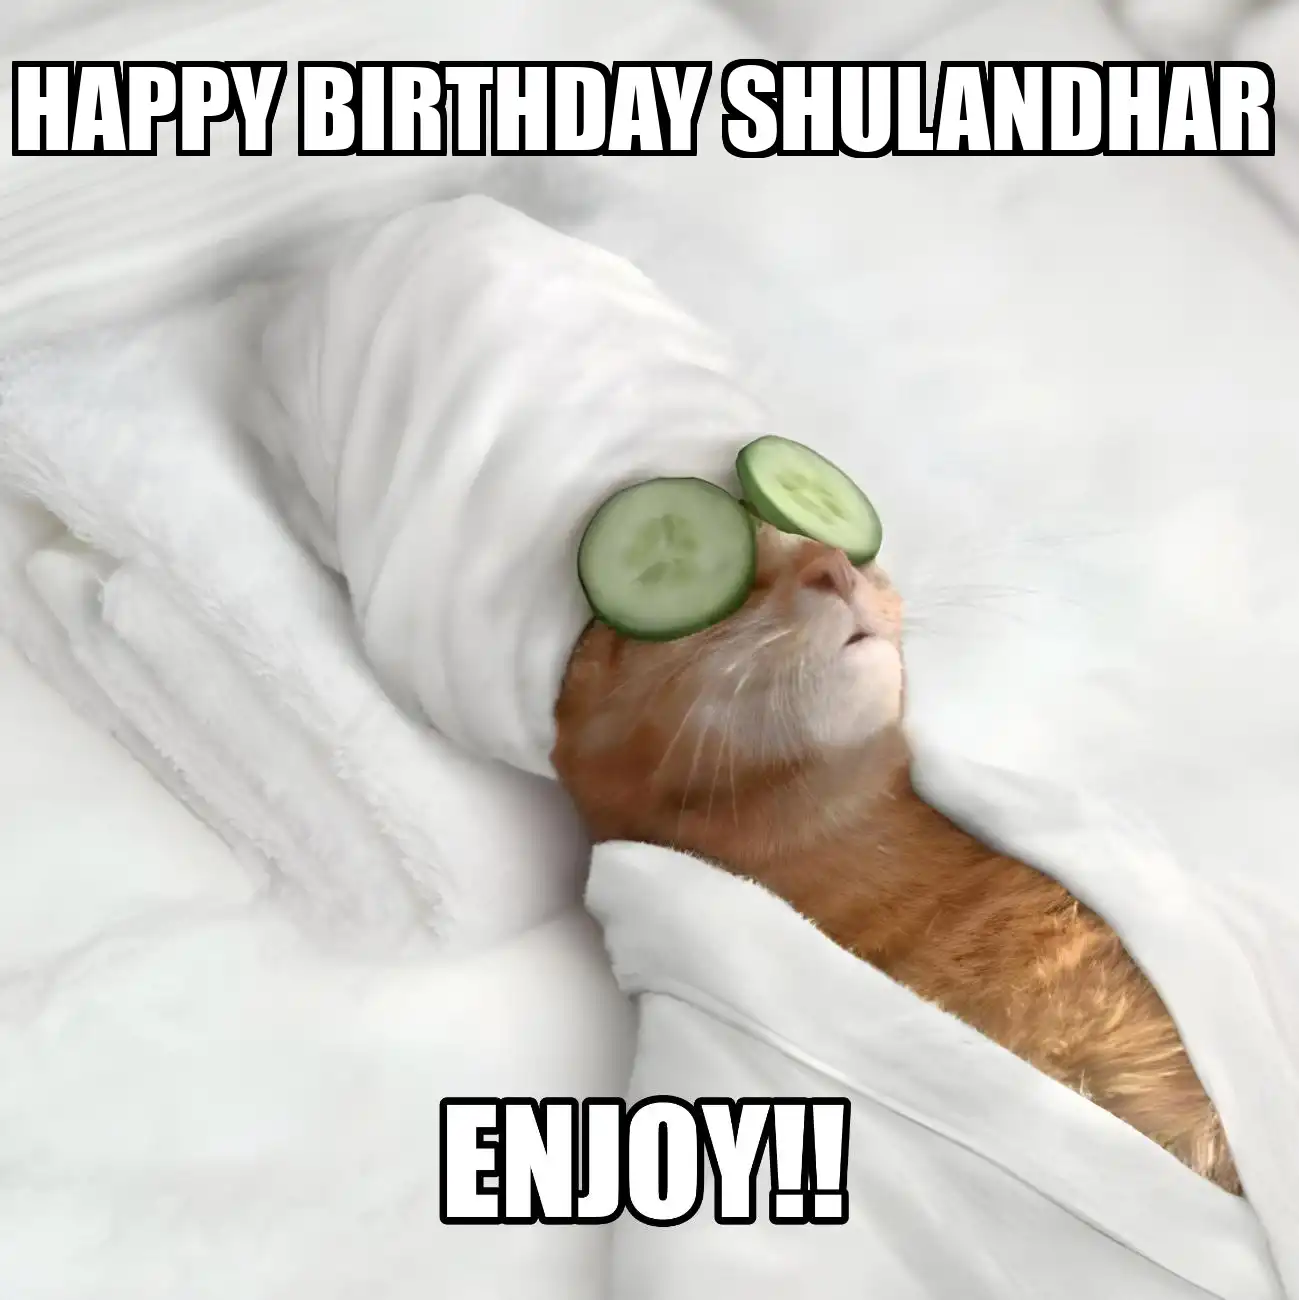 Happy Birthday Shulandhar Enjoy Cat Meme